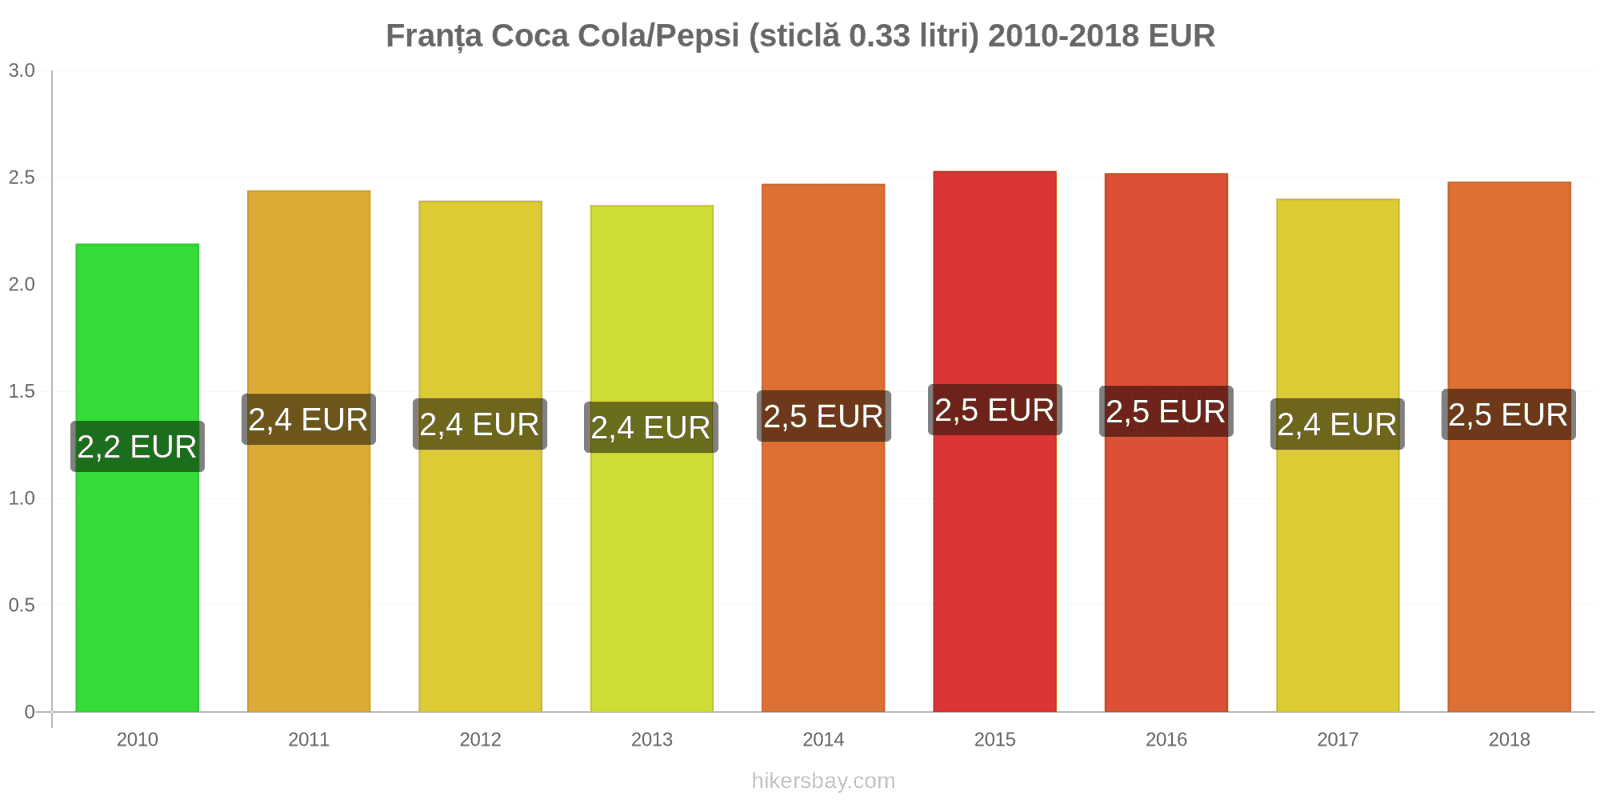 Franța schimbări de prețuri Coca-Cola/Pepsi (sticlă de 0.33 litri) hikersbay.com